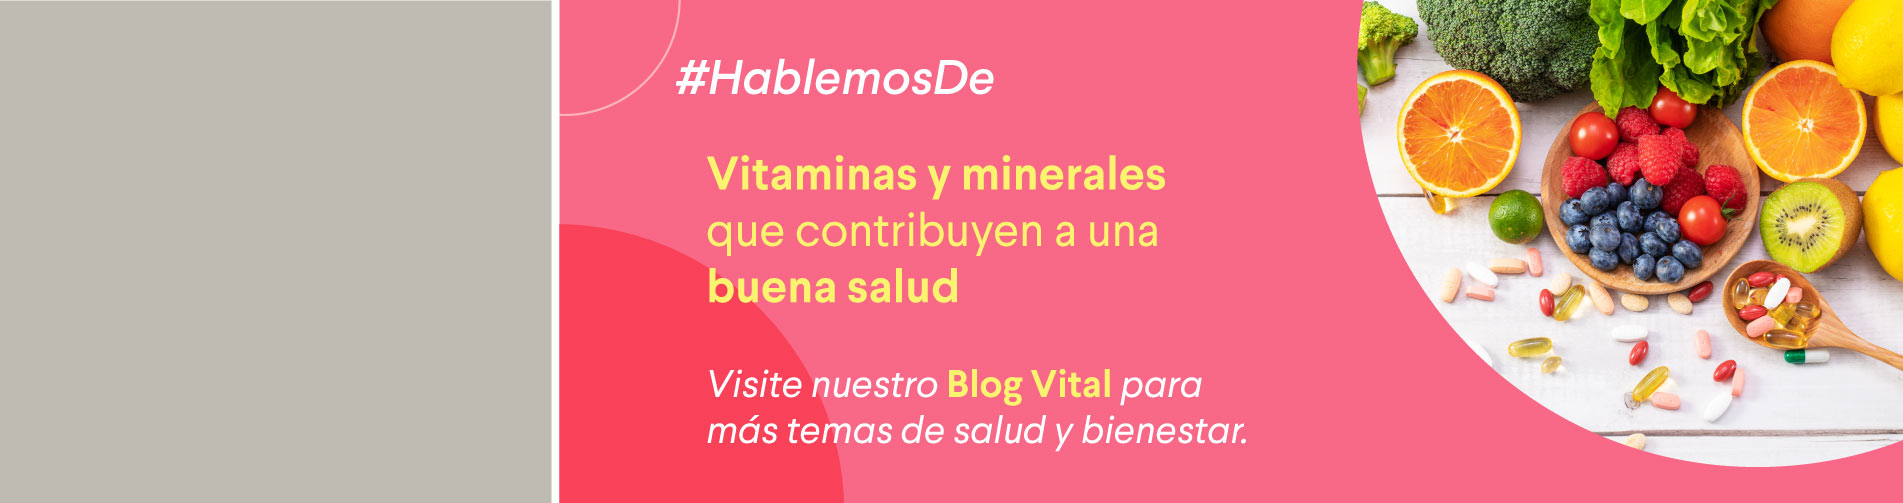 Banner home blog vital: Vitaminas y minerales que contribuyen a una buena salud